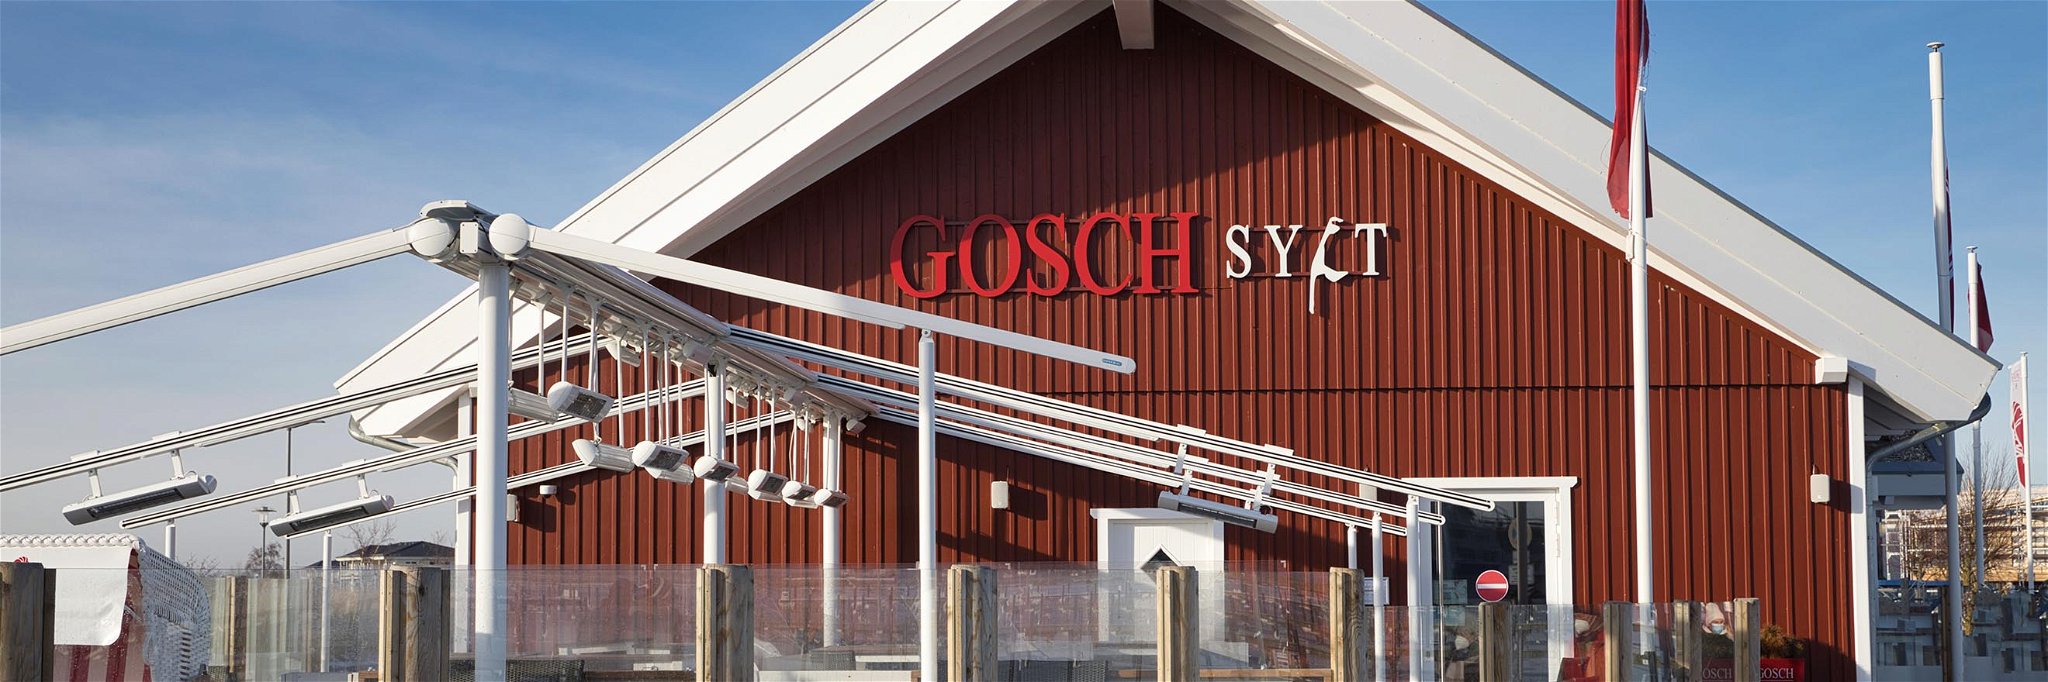 Rund 40 Restaurants werden derzeit unter der Marke »Gosch« betrieben.